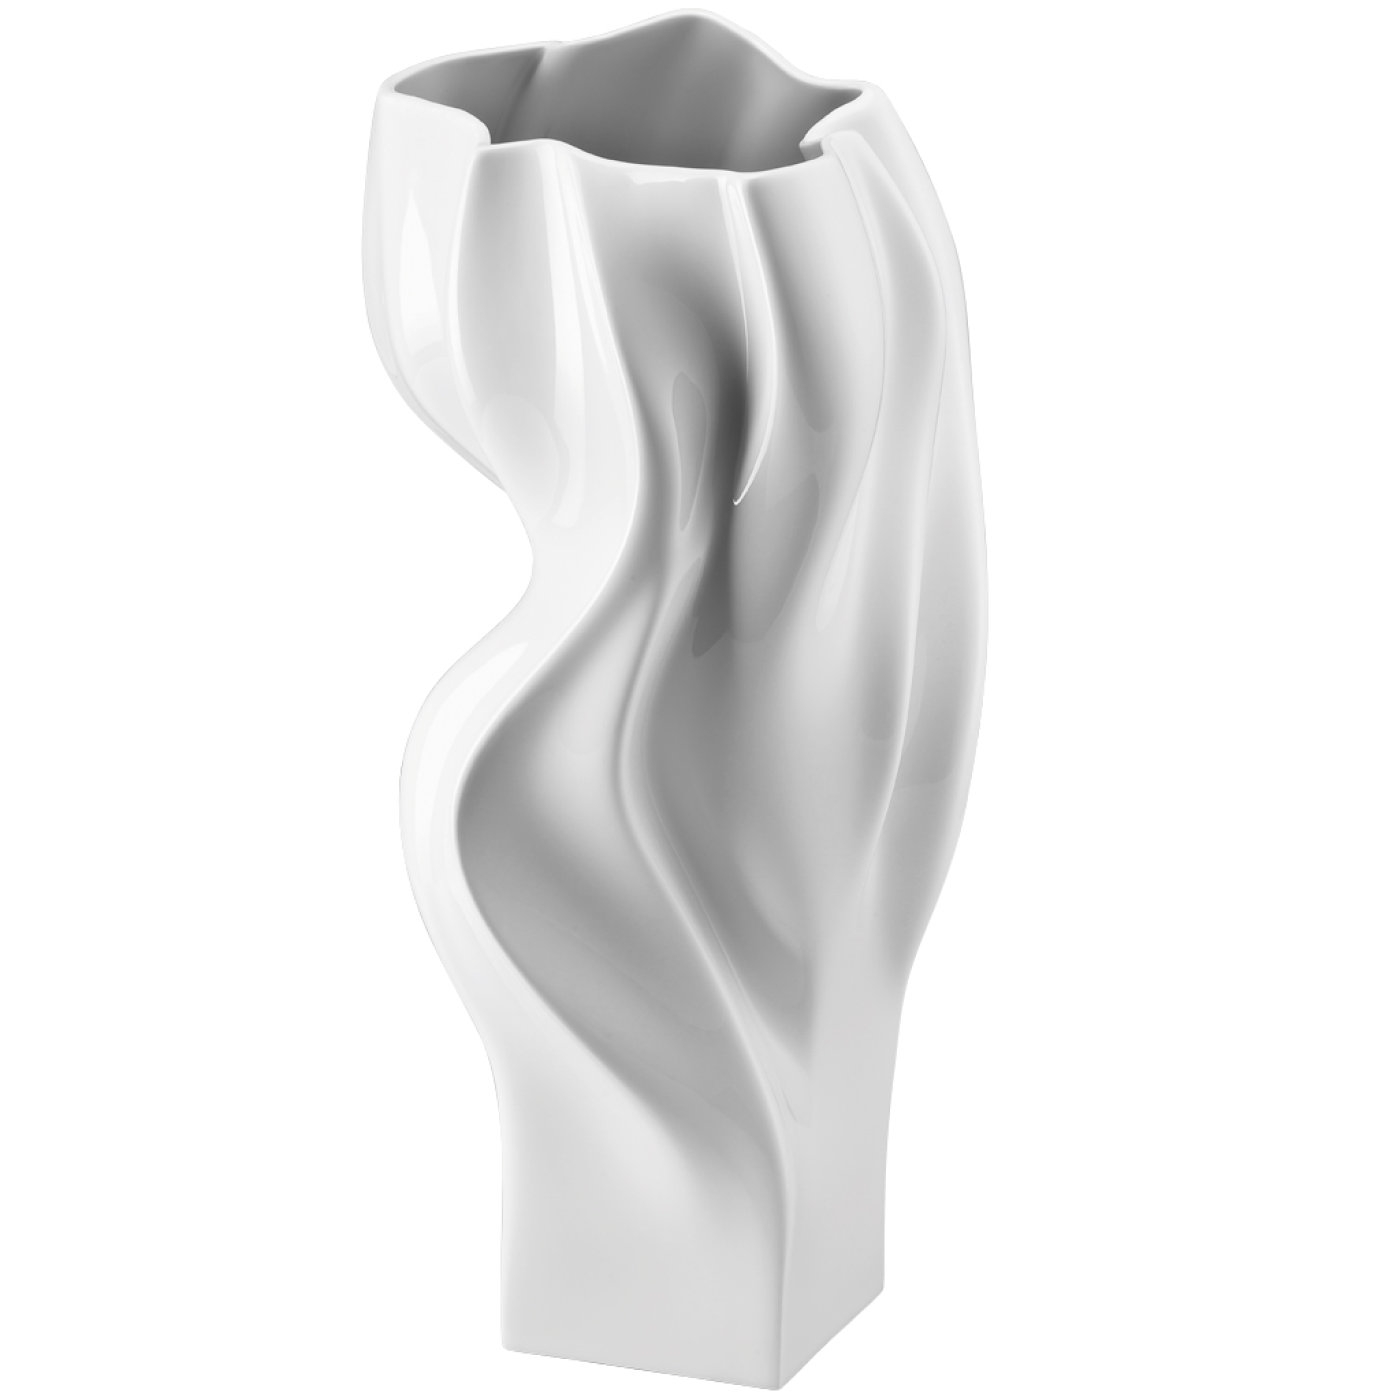 Blown wei vaso 40 cm studio line rosenthal